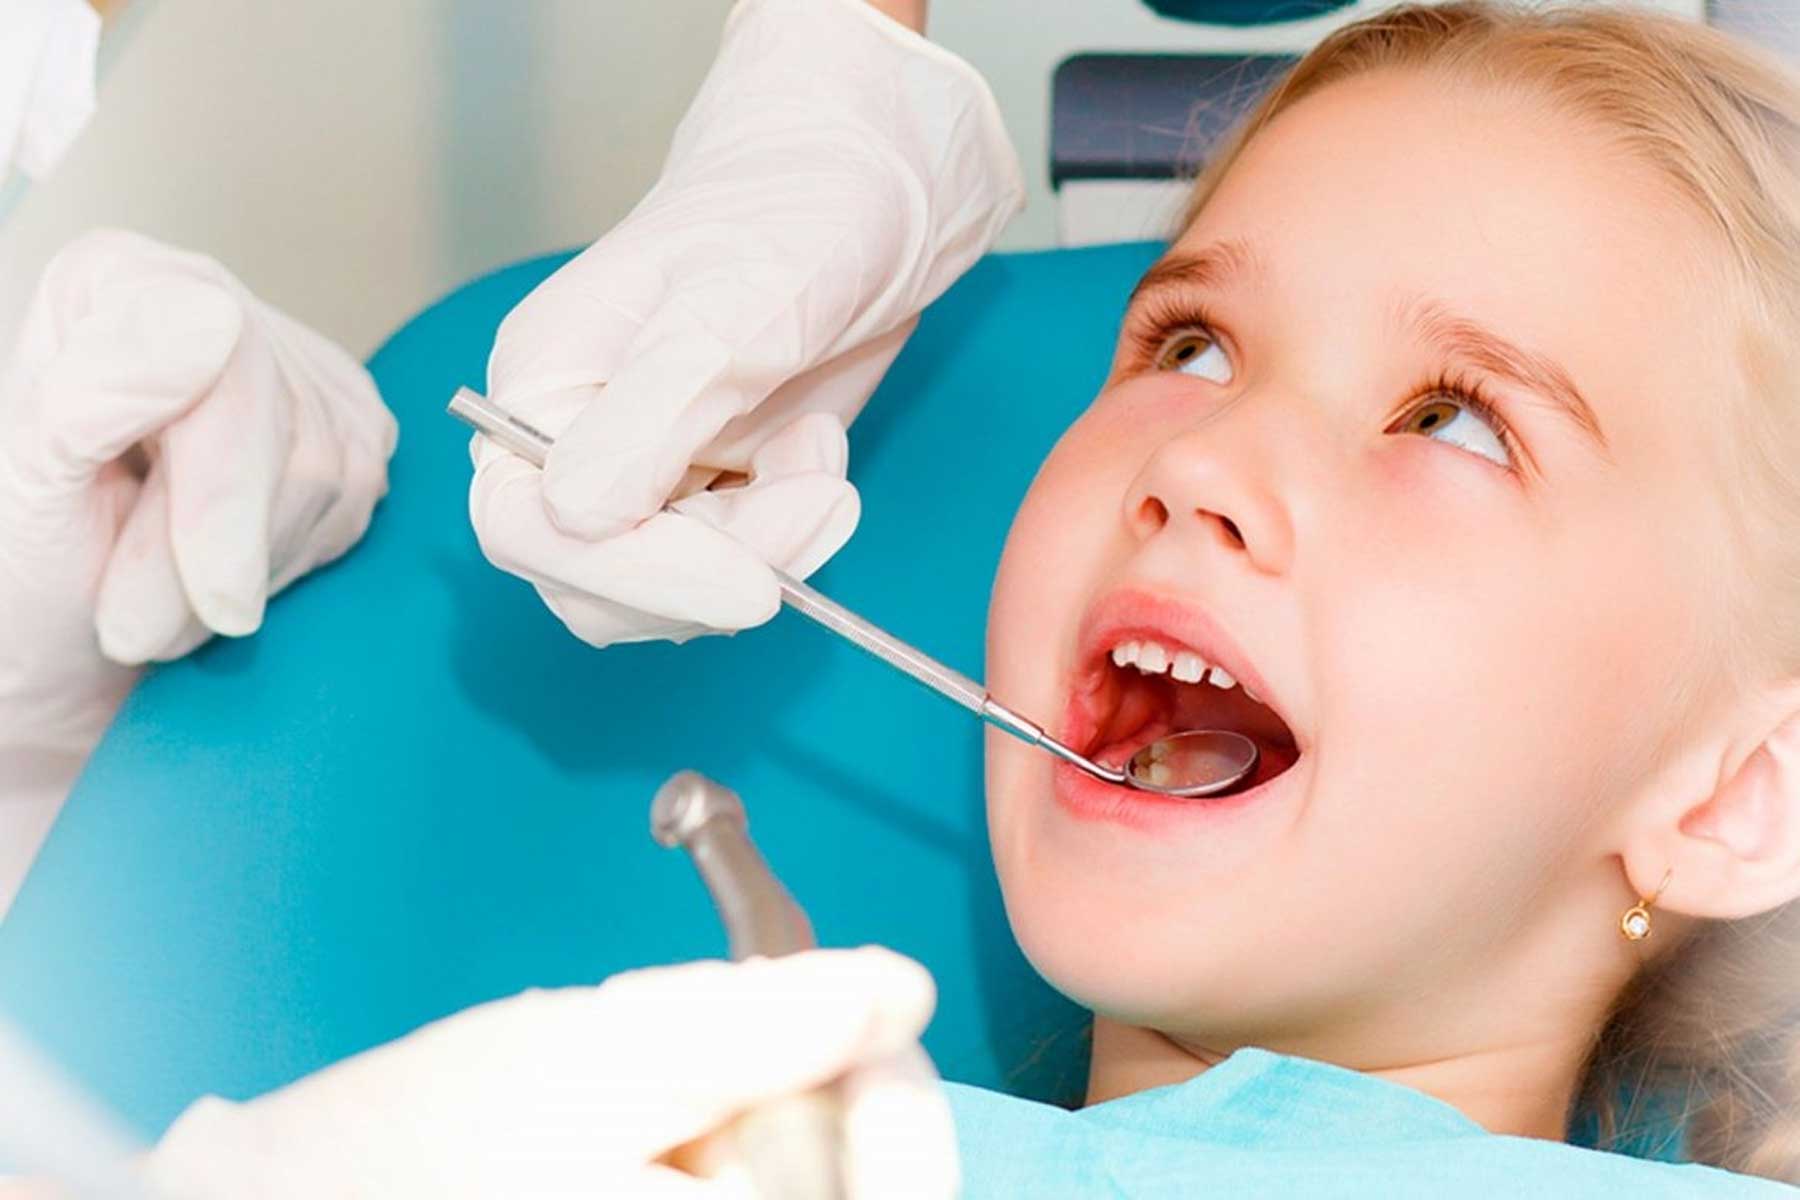 چرا با وجود سمی بود جیوه از این عنصر در آمالگام پر کننده دندان استفاده میشود؟